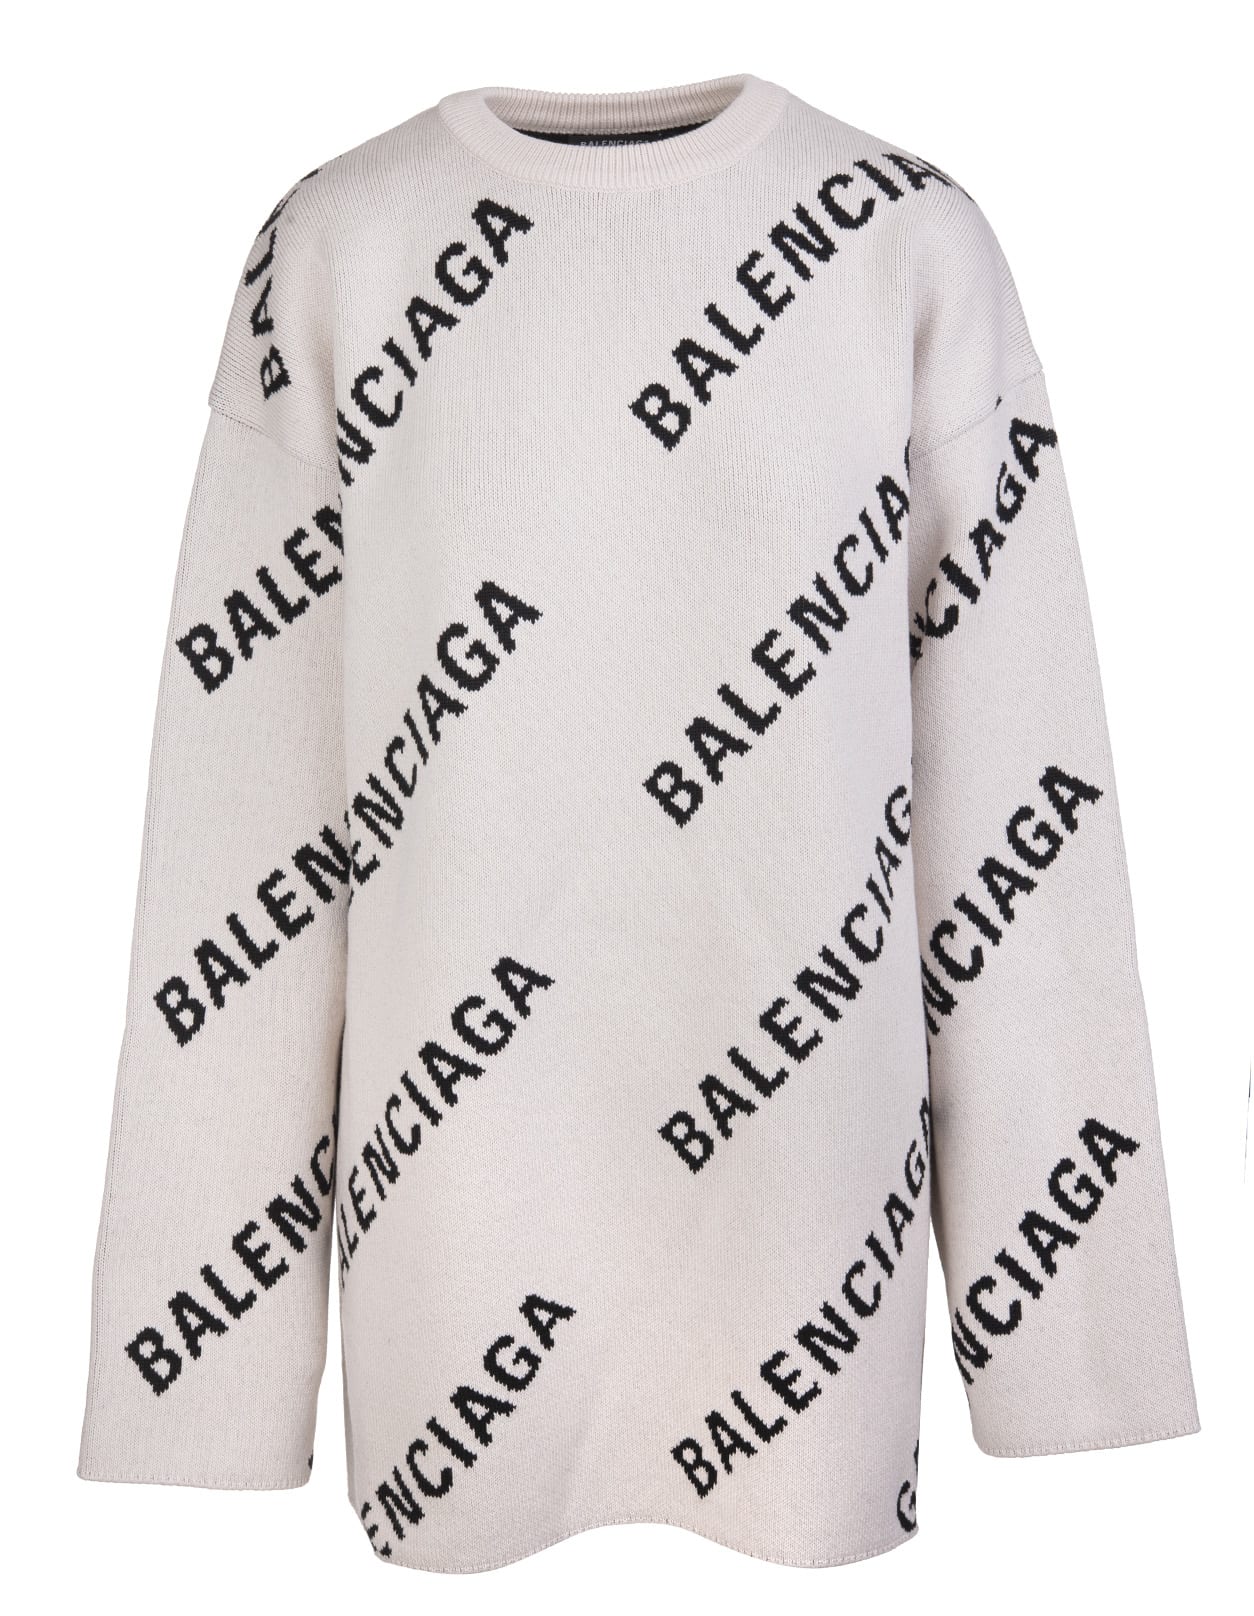 Balenciaga Man Light Beige And Black Allover Logo Round-neck Pullover